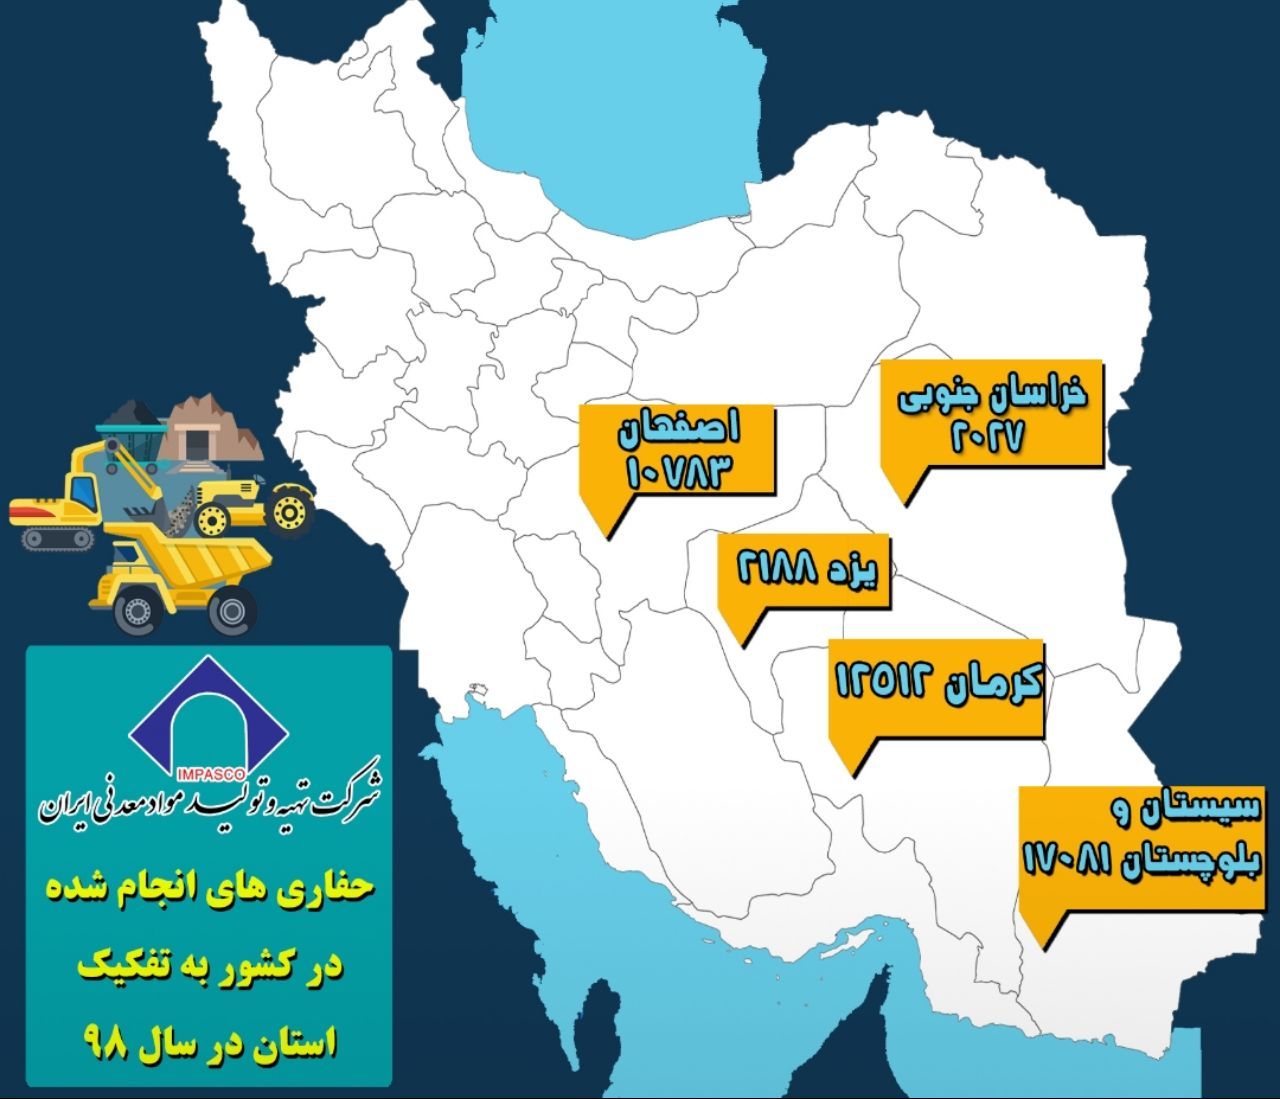 حفاری های انجام شده توسط شرکت تهیه و تولید موادمعدنی ایران در سال ۹۸ به تفکیک استان ها